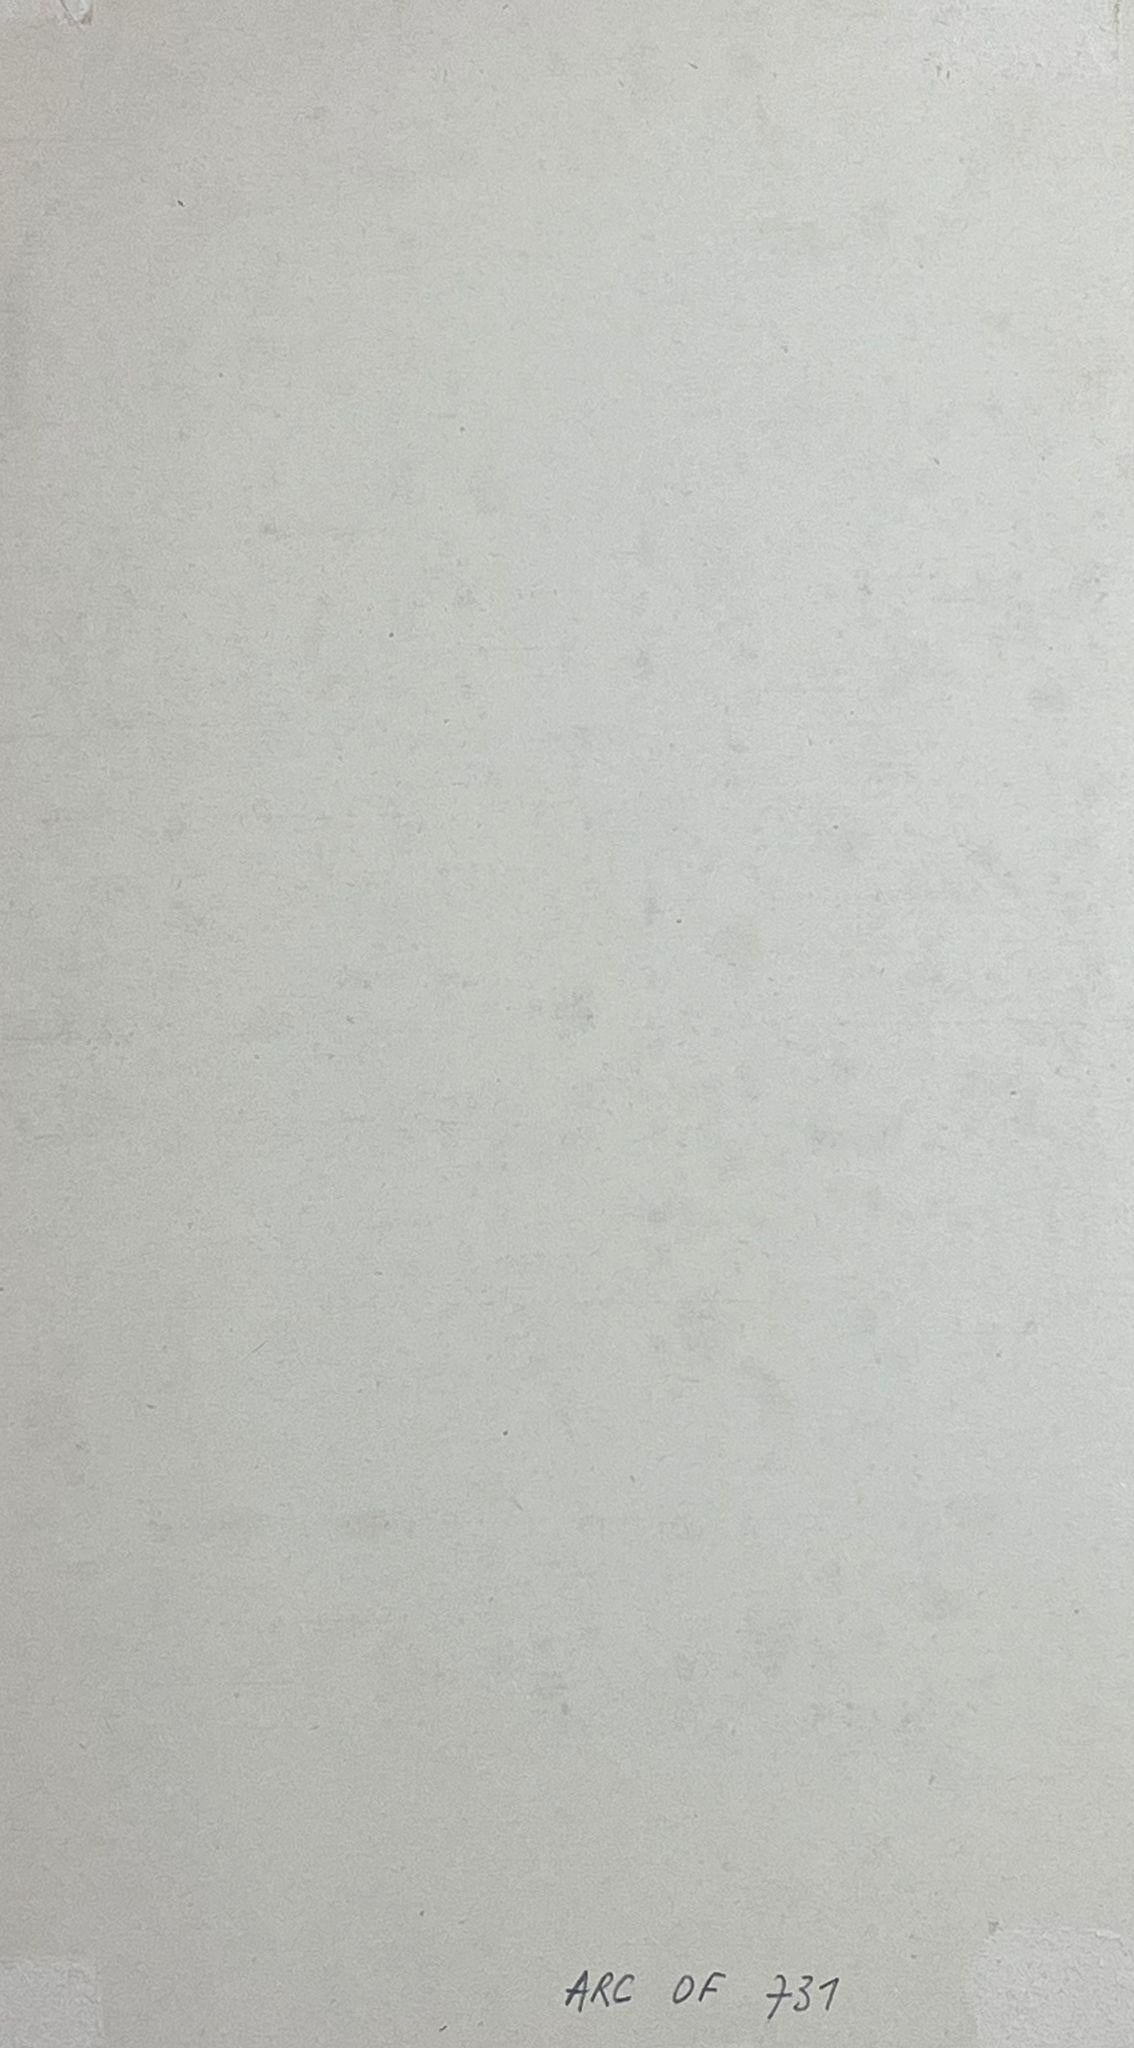 Abstrakt-expressionistische Komposition 
von Jacques COULAIS (1955-2011) Aquarell auf Karton
ungerahmt: 19 x 10,5 Zoll
Zustand: ausgezeichnet
Provenienz: Alle Gemälde, die wir von diesem Künstler zum Verkauf anbieten, stammen aus dem Studio des